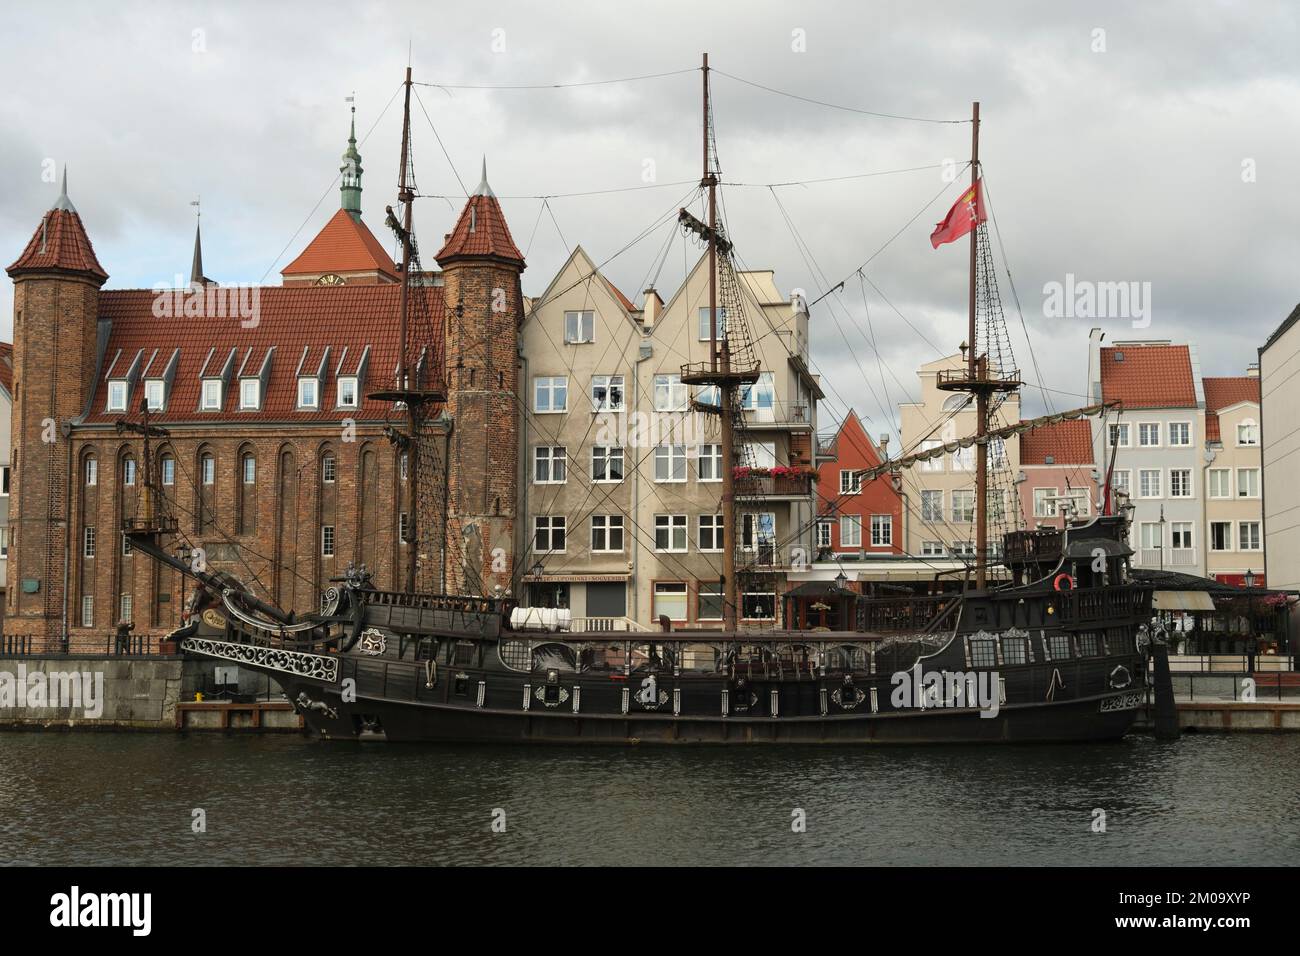 Vecchia nave a vela di fronte agli edifici storici, Danzica, Polonia Foto Stock